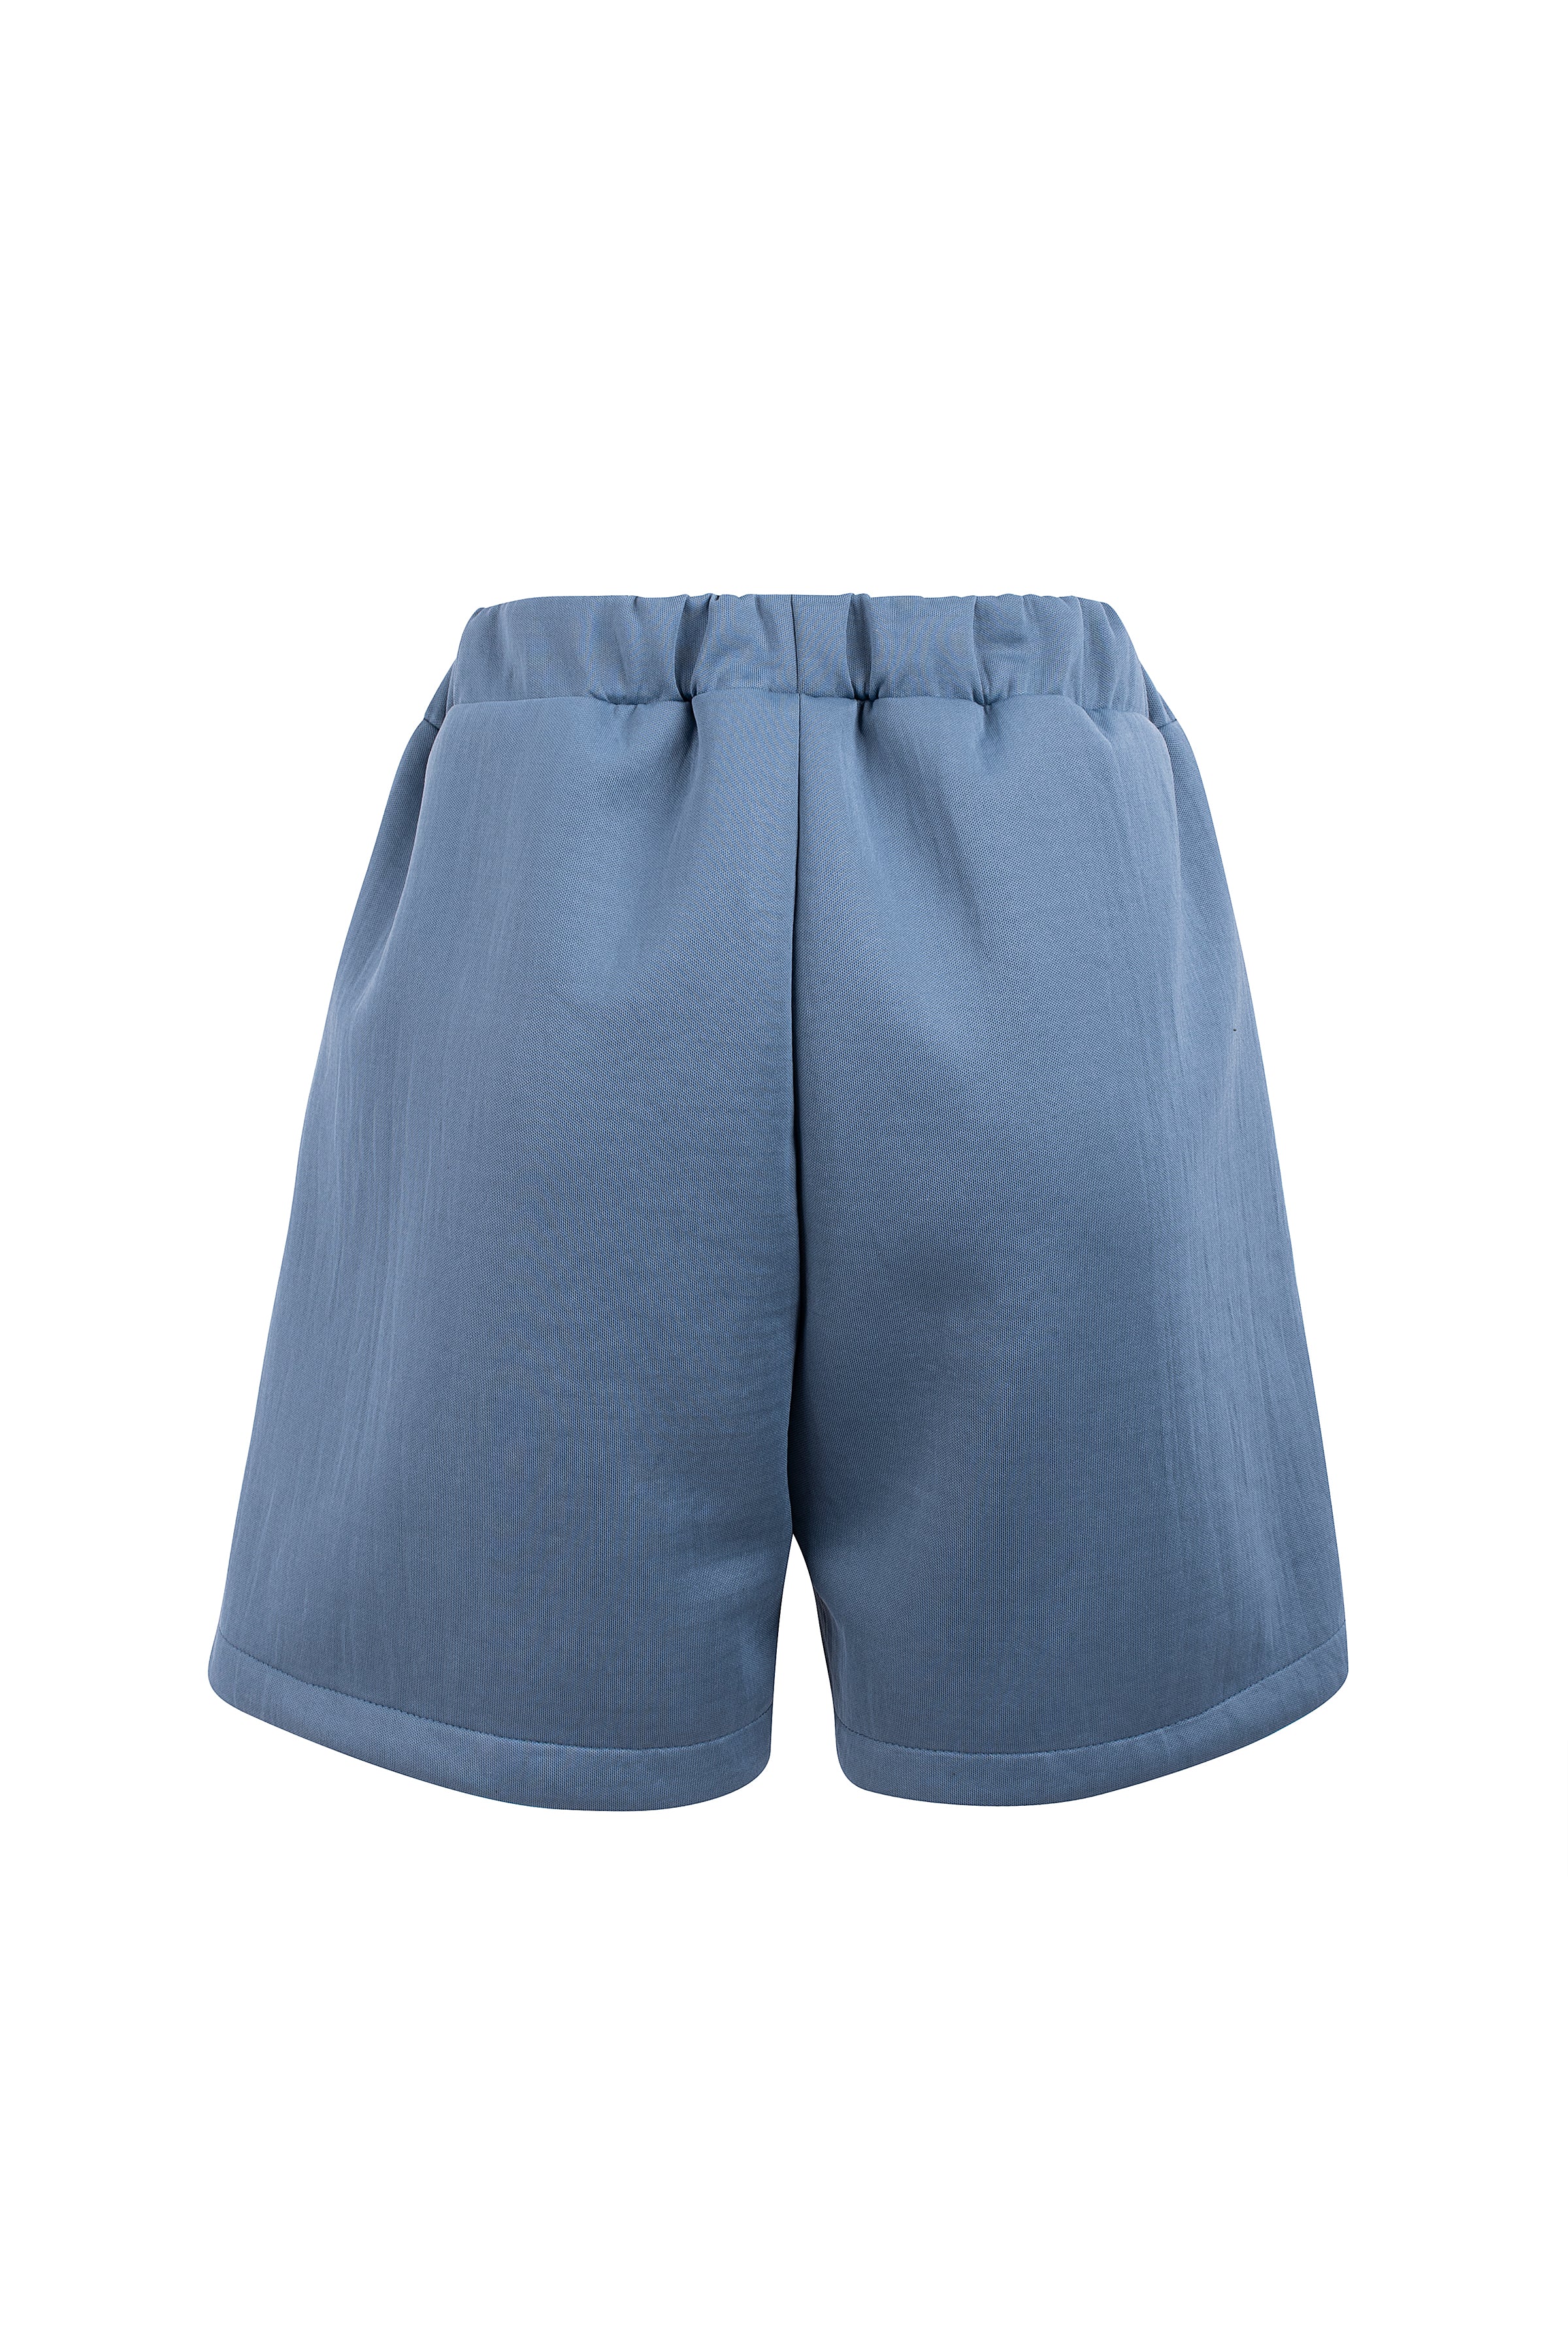 Essence Doble Shorts Indigo Blue